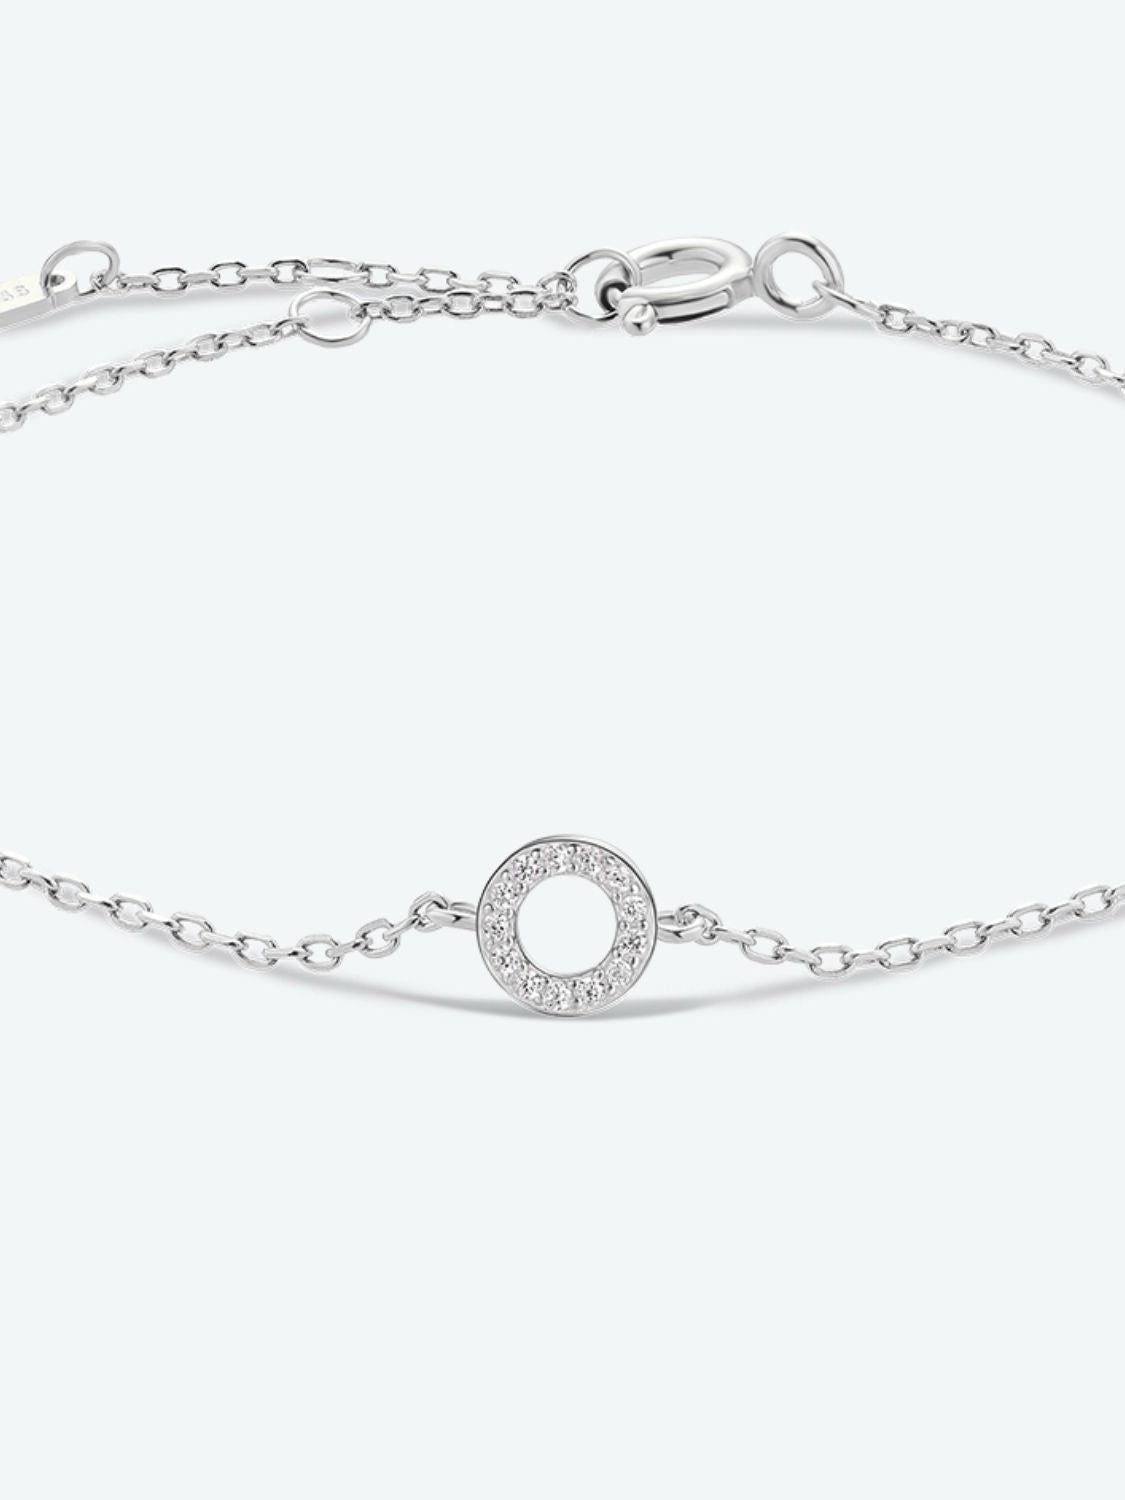 L To P Zircon 925 Sterling Silver Bracelet - Women’s Jewelry - Bracelets - 24 - 2024